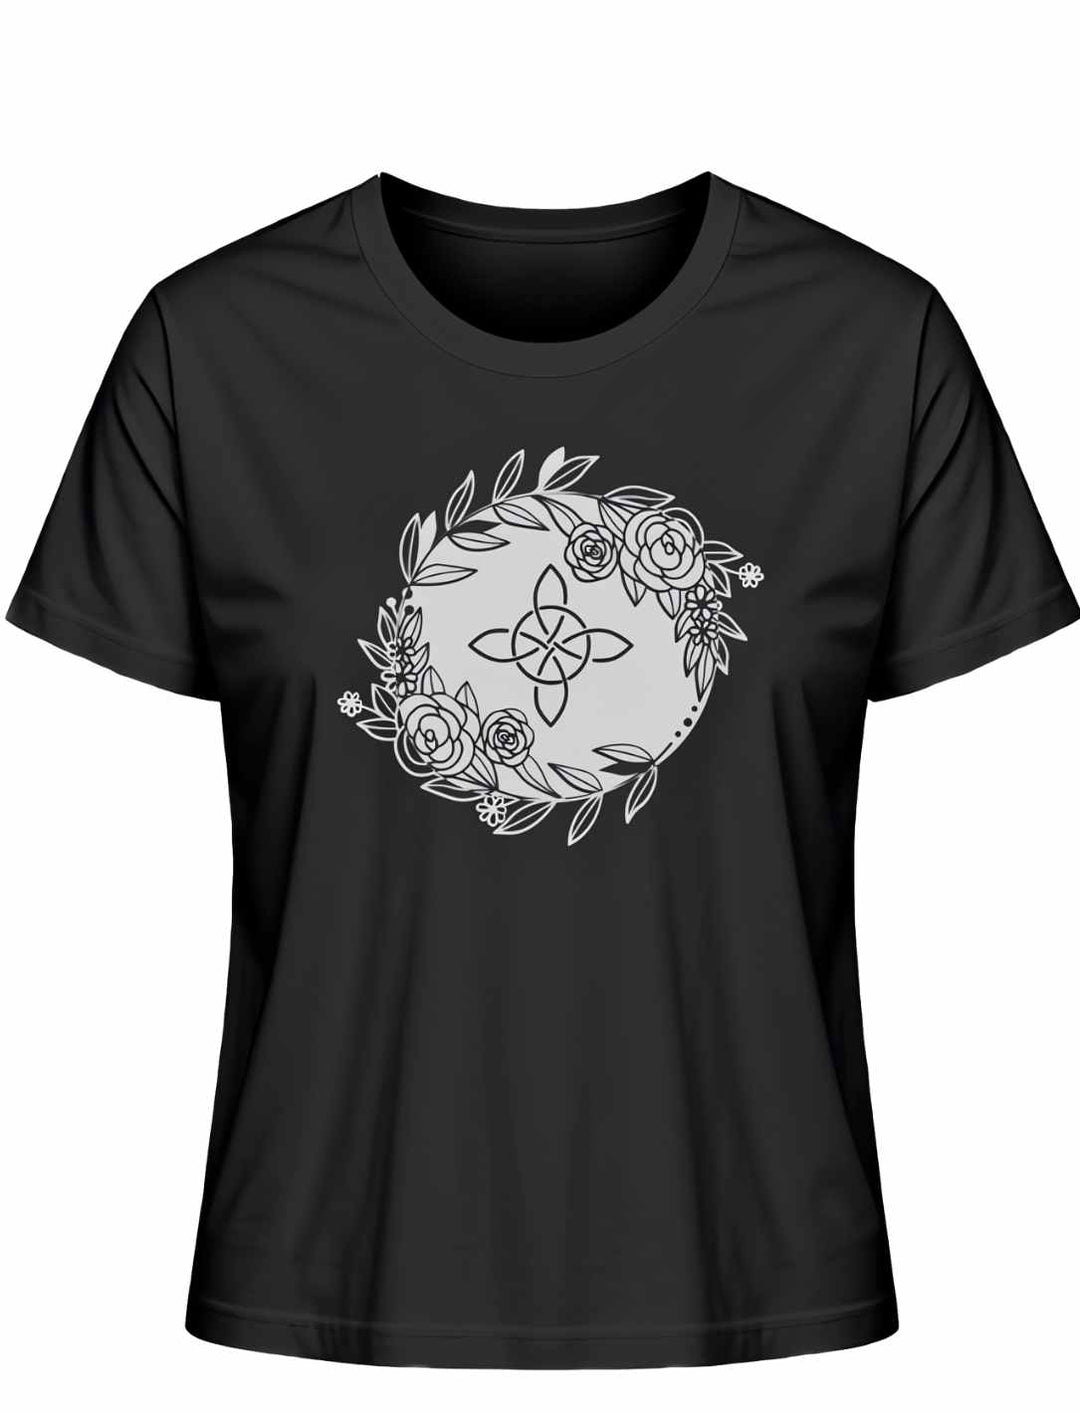 Liegedarstellung eines schwarzen 'Eriu Witch Knot'-T-Shirts mit keltischem Knoten- und Hexensymbol-Design auf weissem Hintergrund